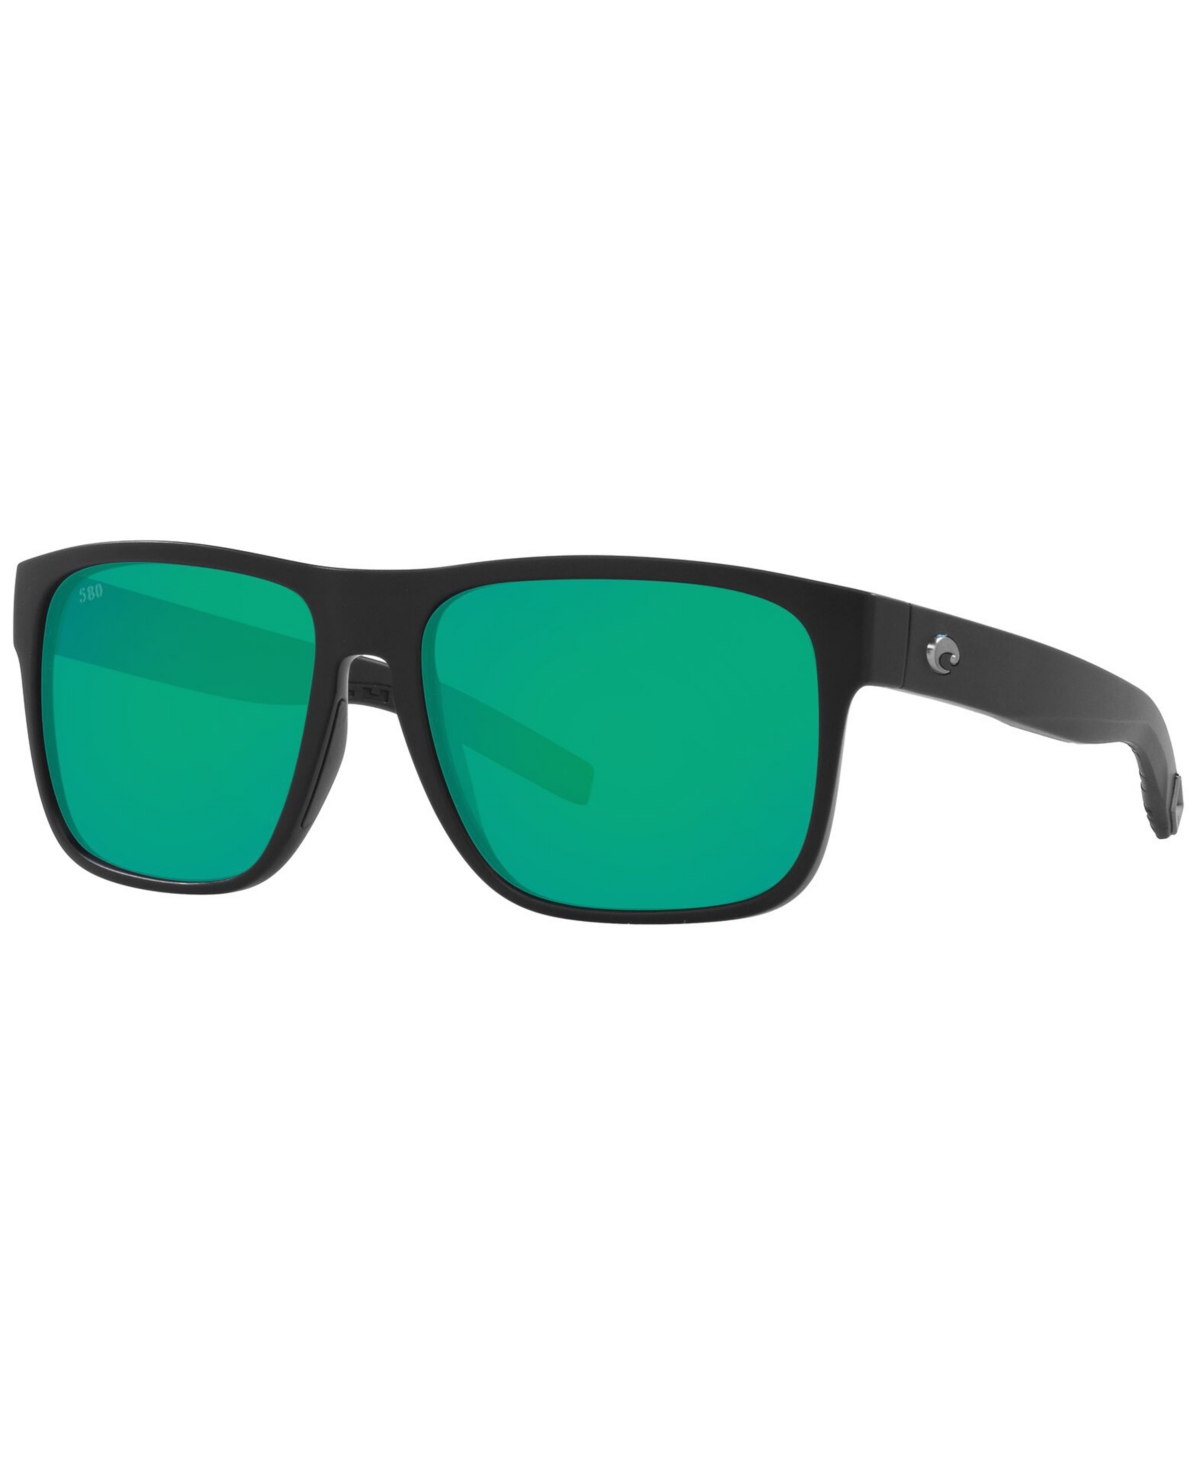 Costa Del Mar Spearo Xl Polarized Sunglasses, 6s9013 59 In Matte Black,green Mirror G